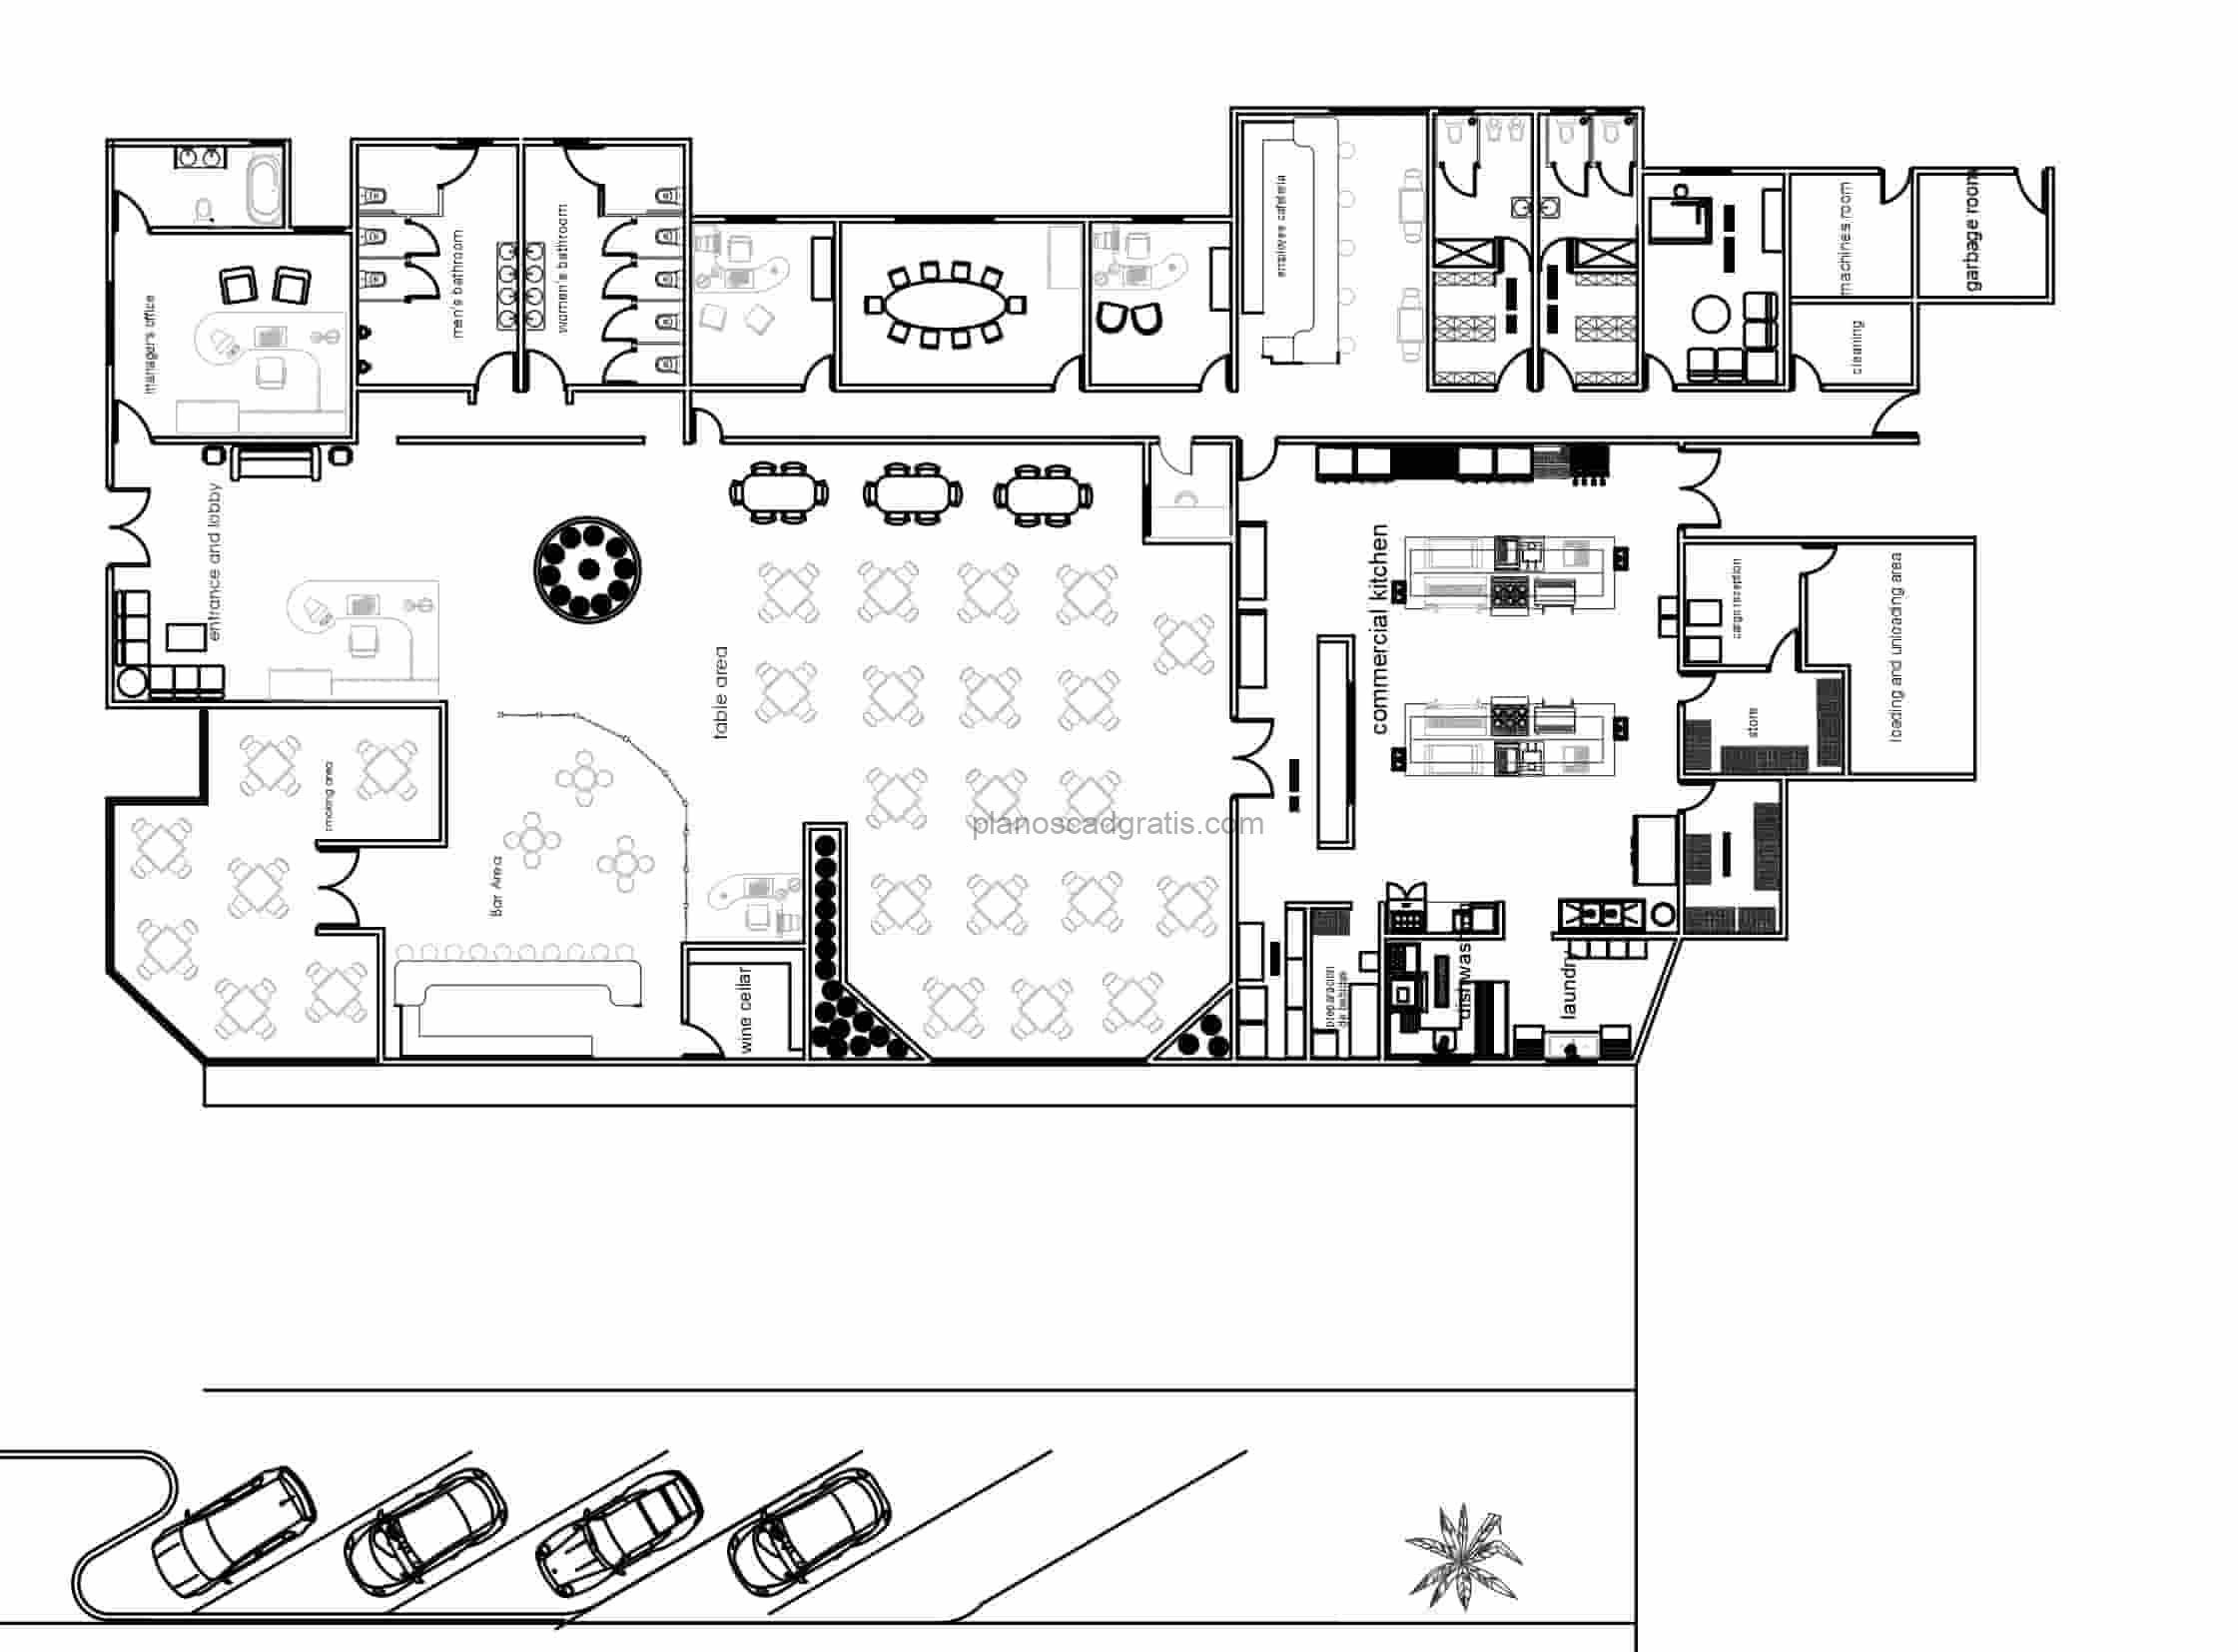 plano dwg de autocad de restaurante edificio comercial para descarga gratis plano con dimensines y bloques de autocad